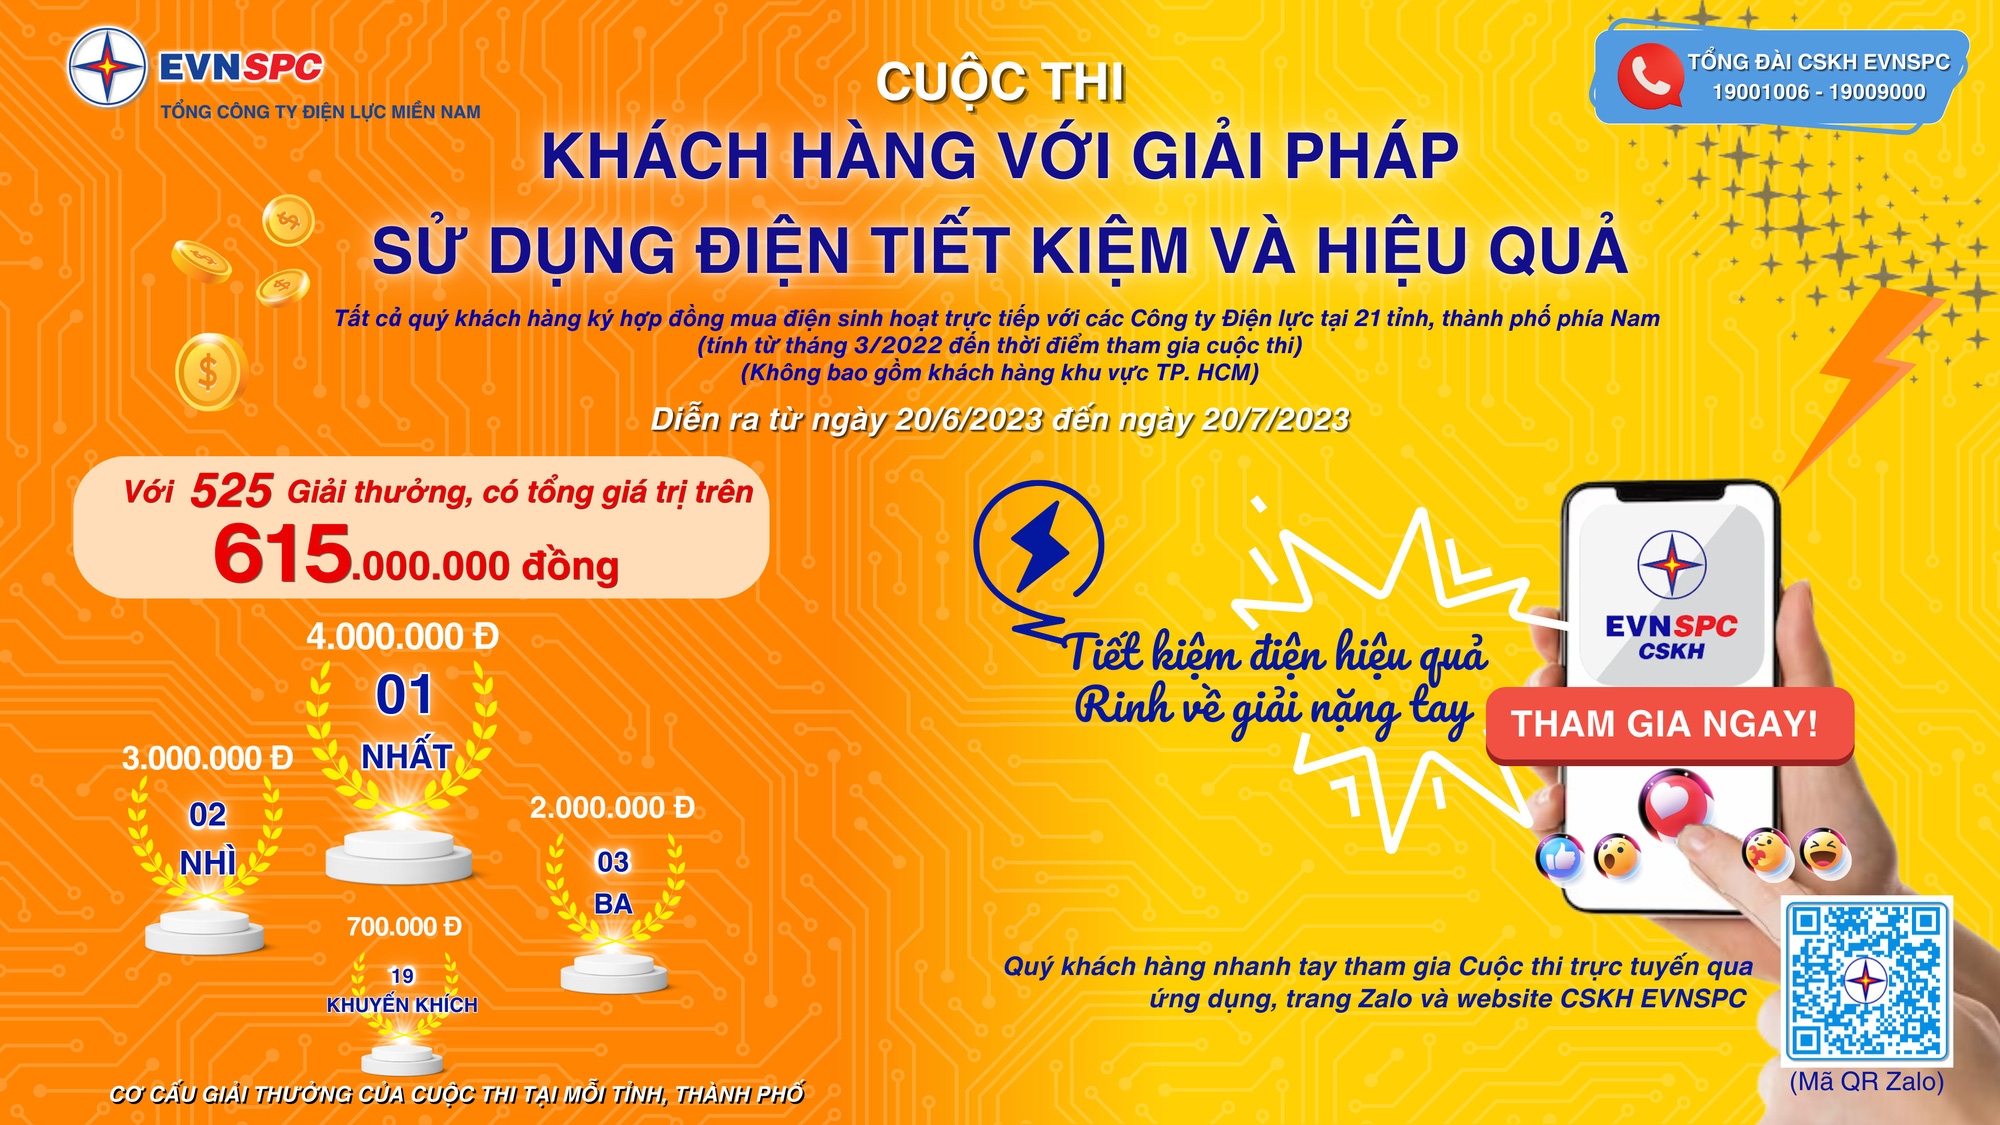 Cuộc thi “Khách hàng với giải pháp sử dụng điện tiết kiệm và hiệu quả” với tổng giá trị giải thưởng lên đến 615 triệu đồng